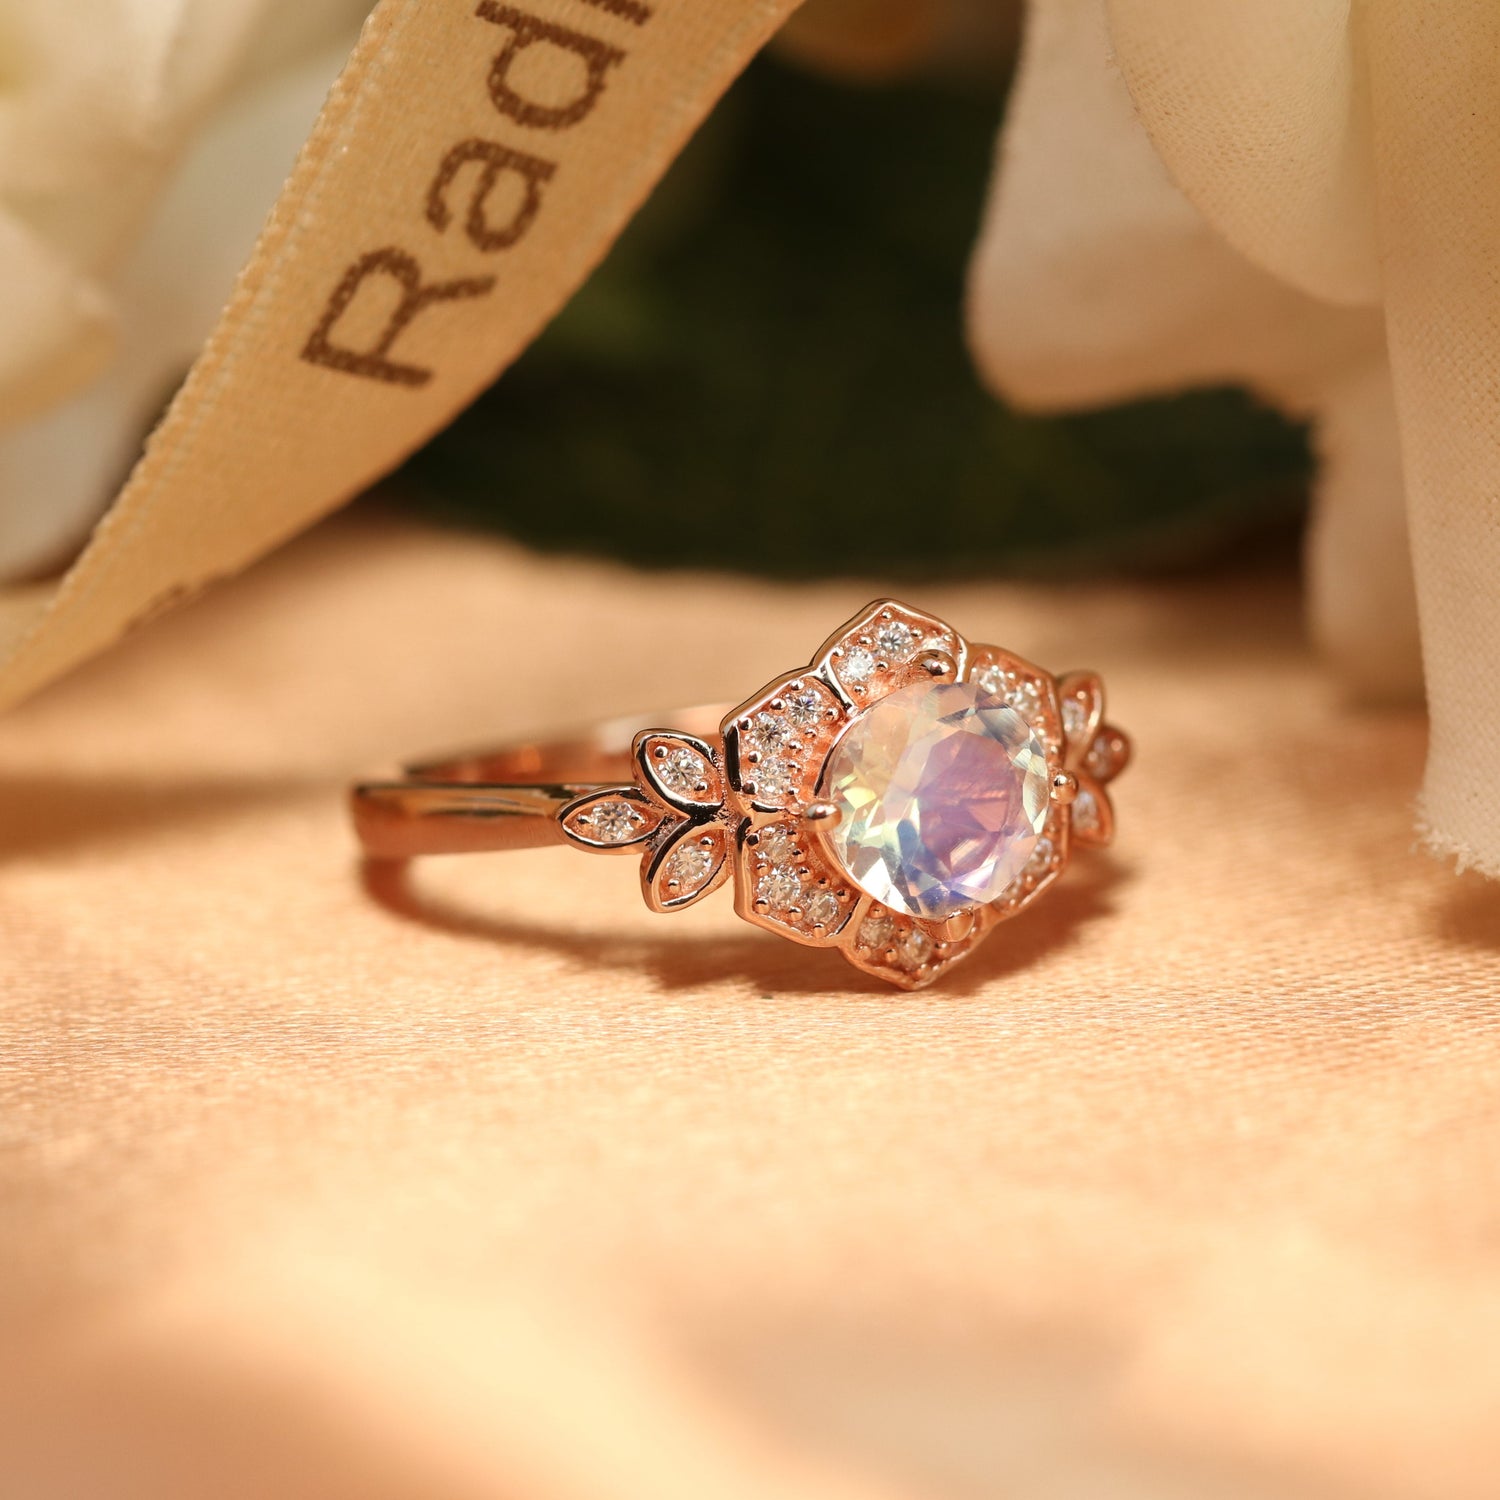 Shop Flower Rose Cut Diamond Ring in 18K White Gold Online